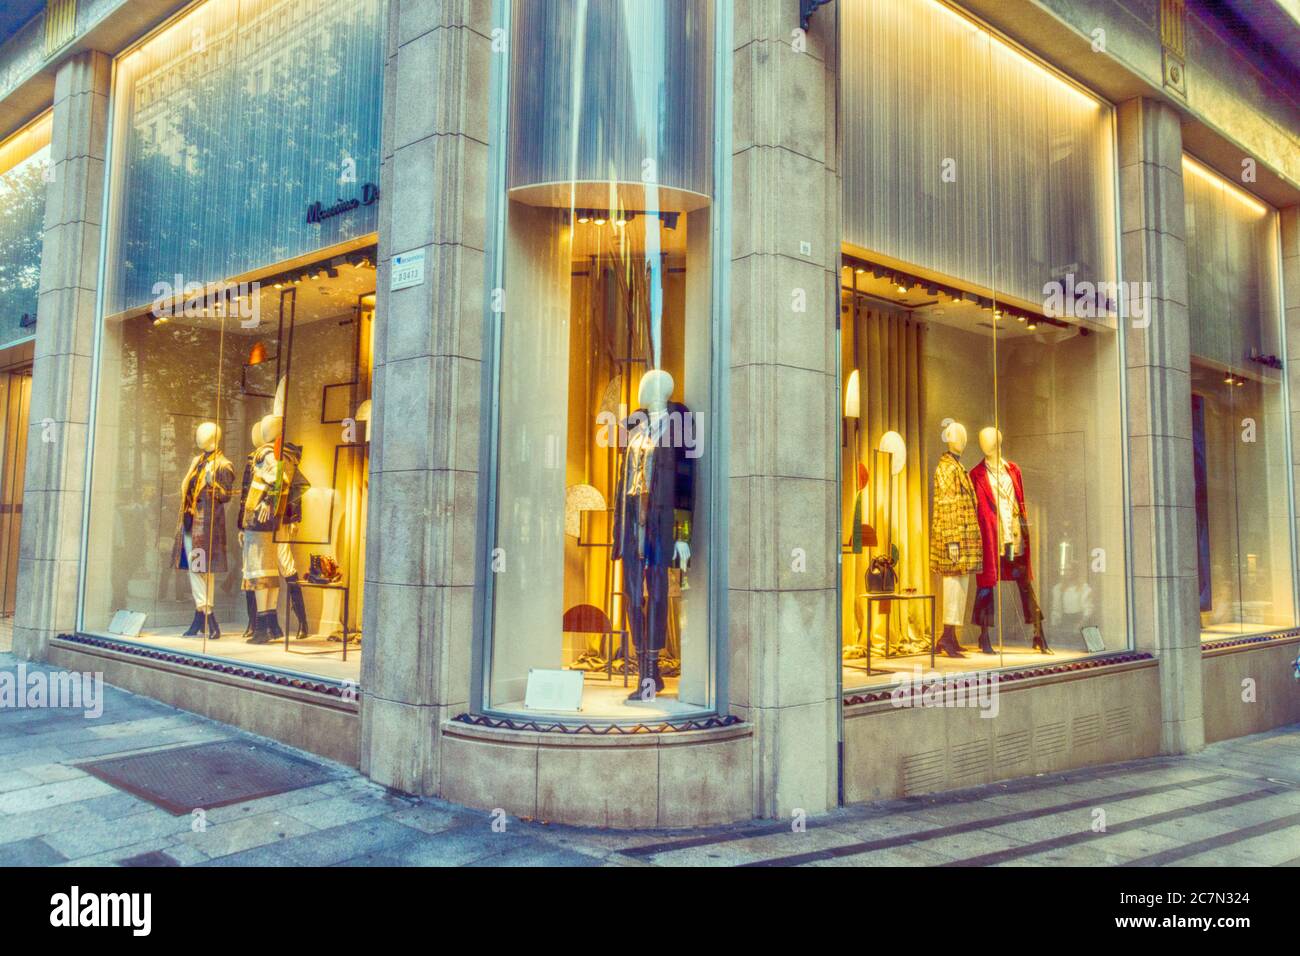 Des boutiques de mode haut de gamme numérisées bordent une rue à Barcelone, en Espagne. Banque D'Images